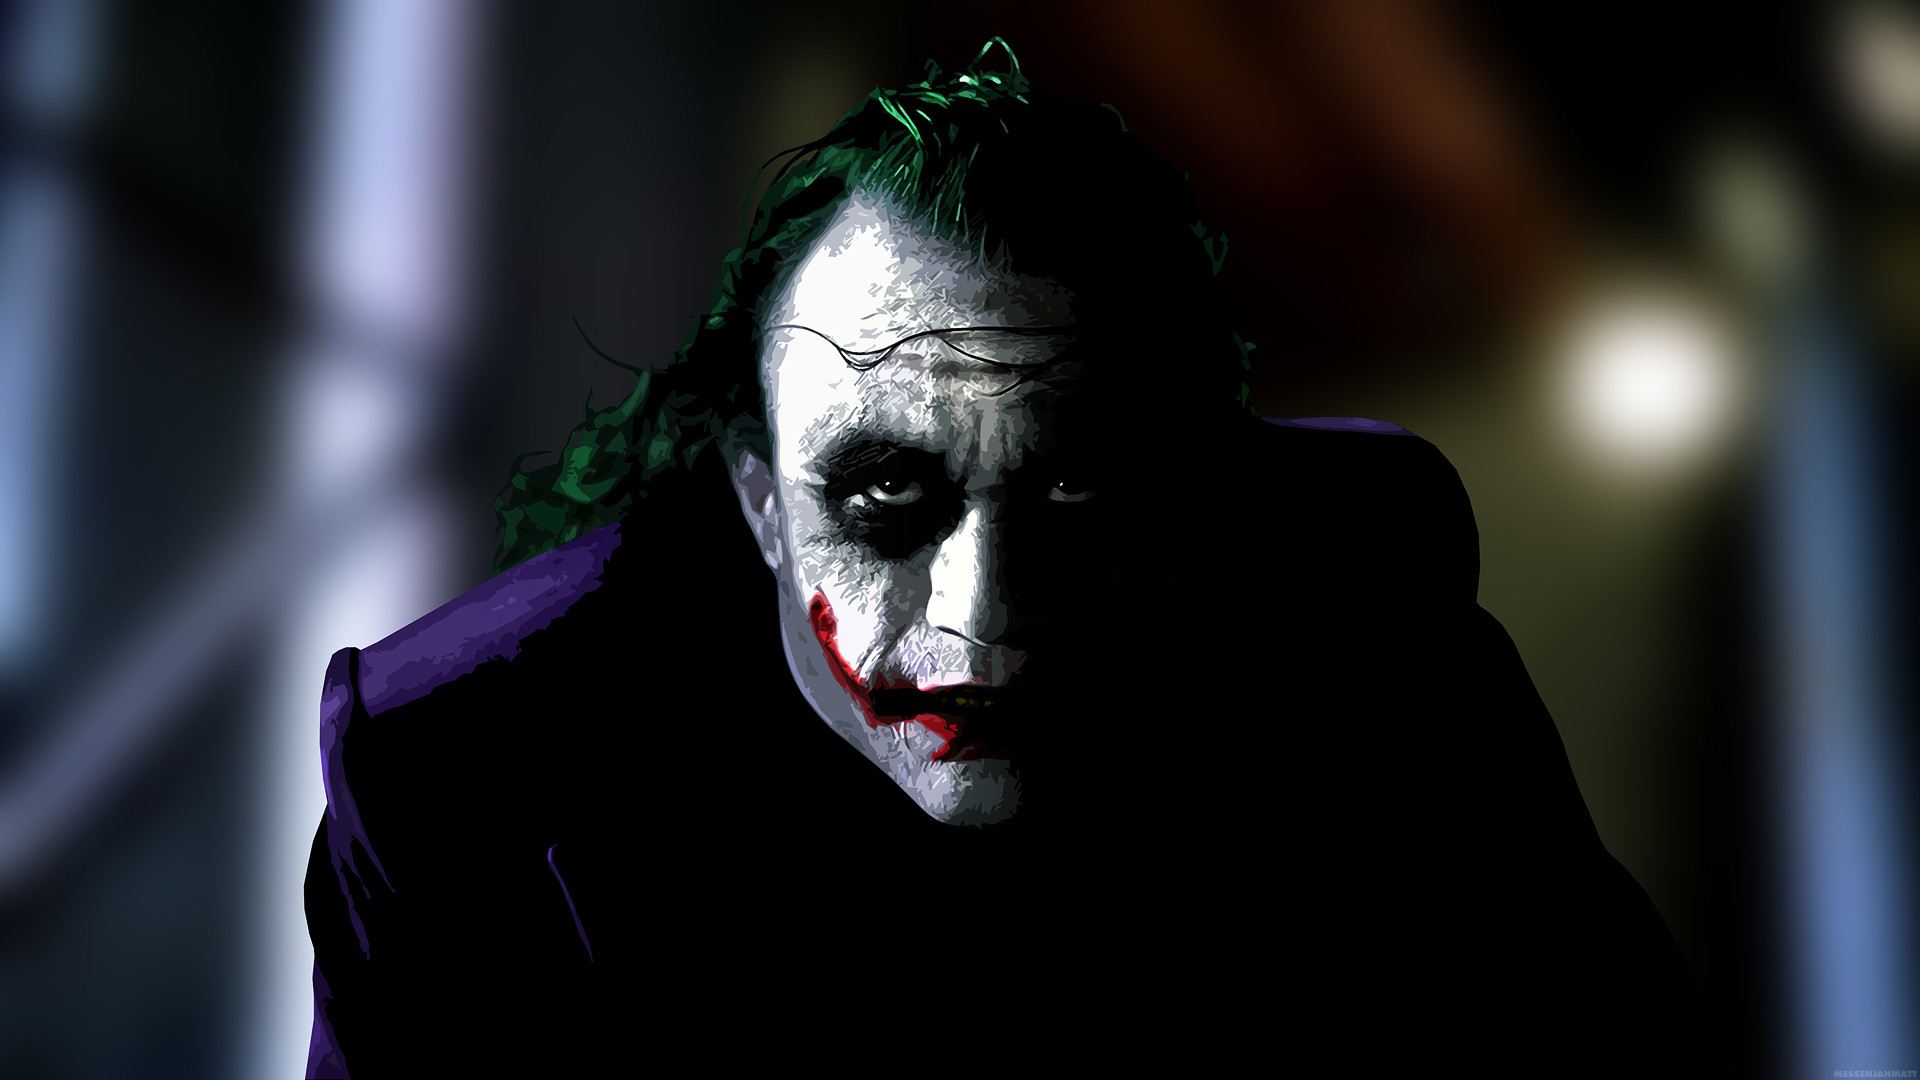 1920x1080 The Joker Full HD Wallpaper 